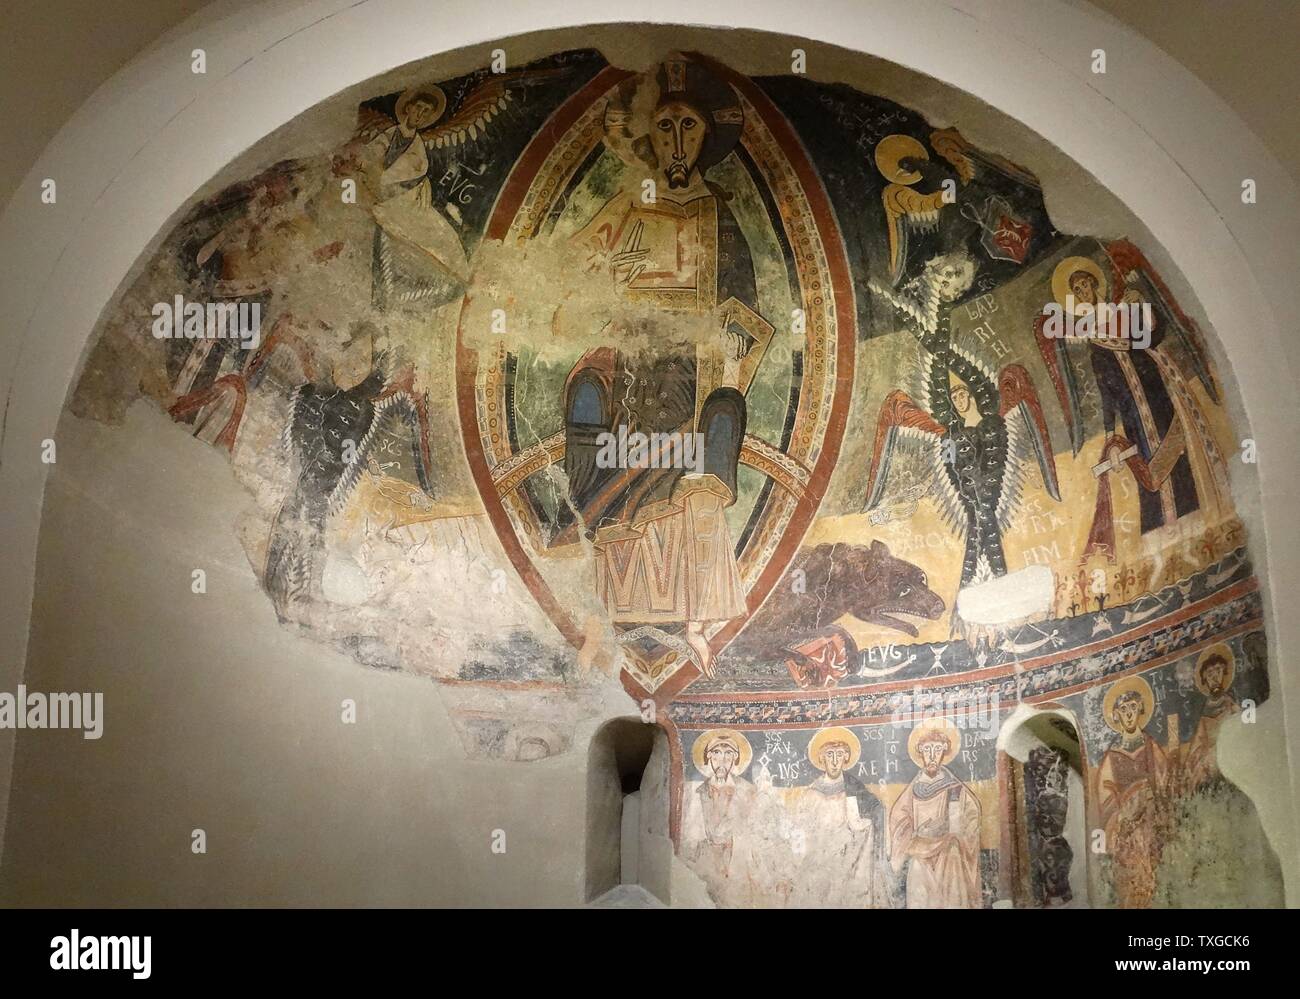 Détail des fresques de l'abside de Saint Michael Marmellar, Palais National, Barcelone, Espagne. En date du 12e siècle. Banque D'Images